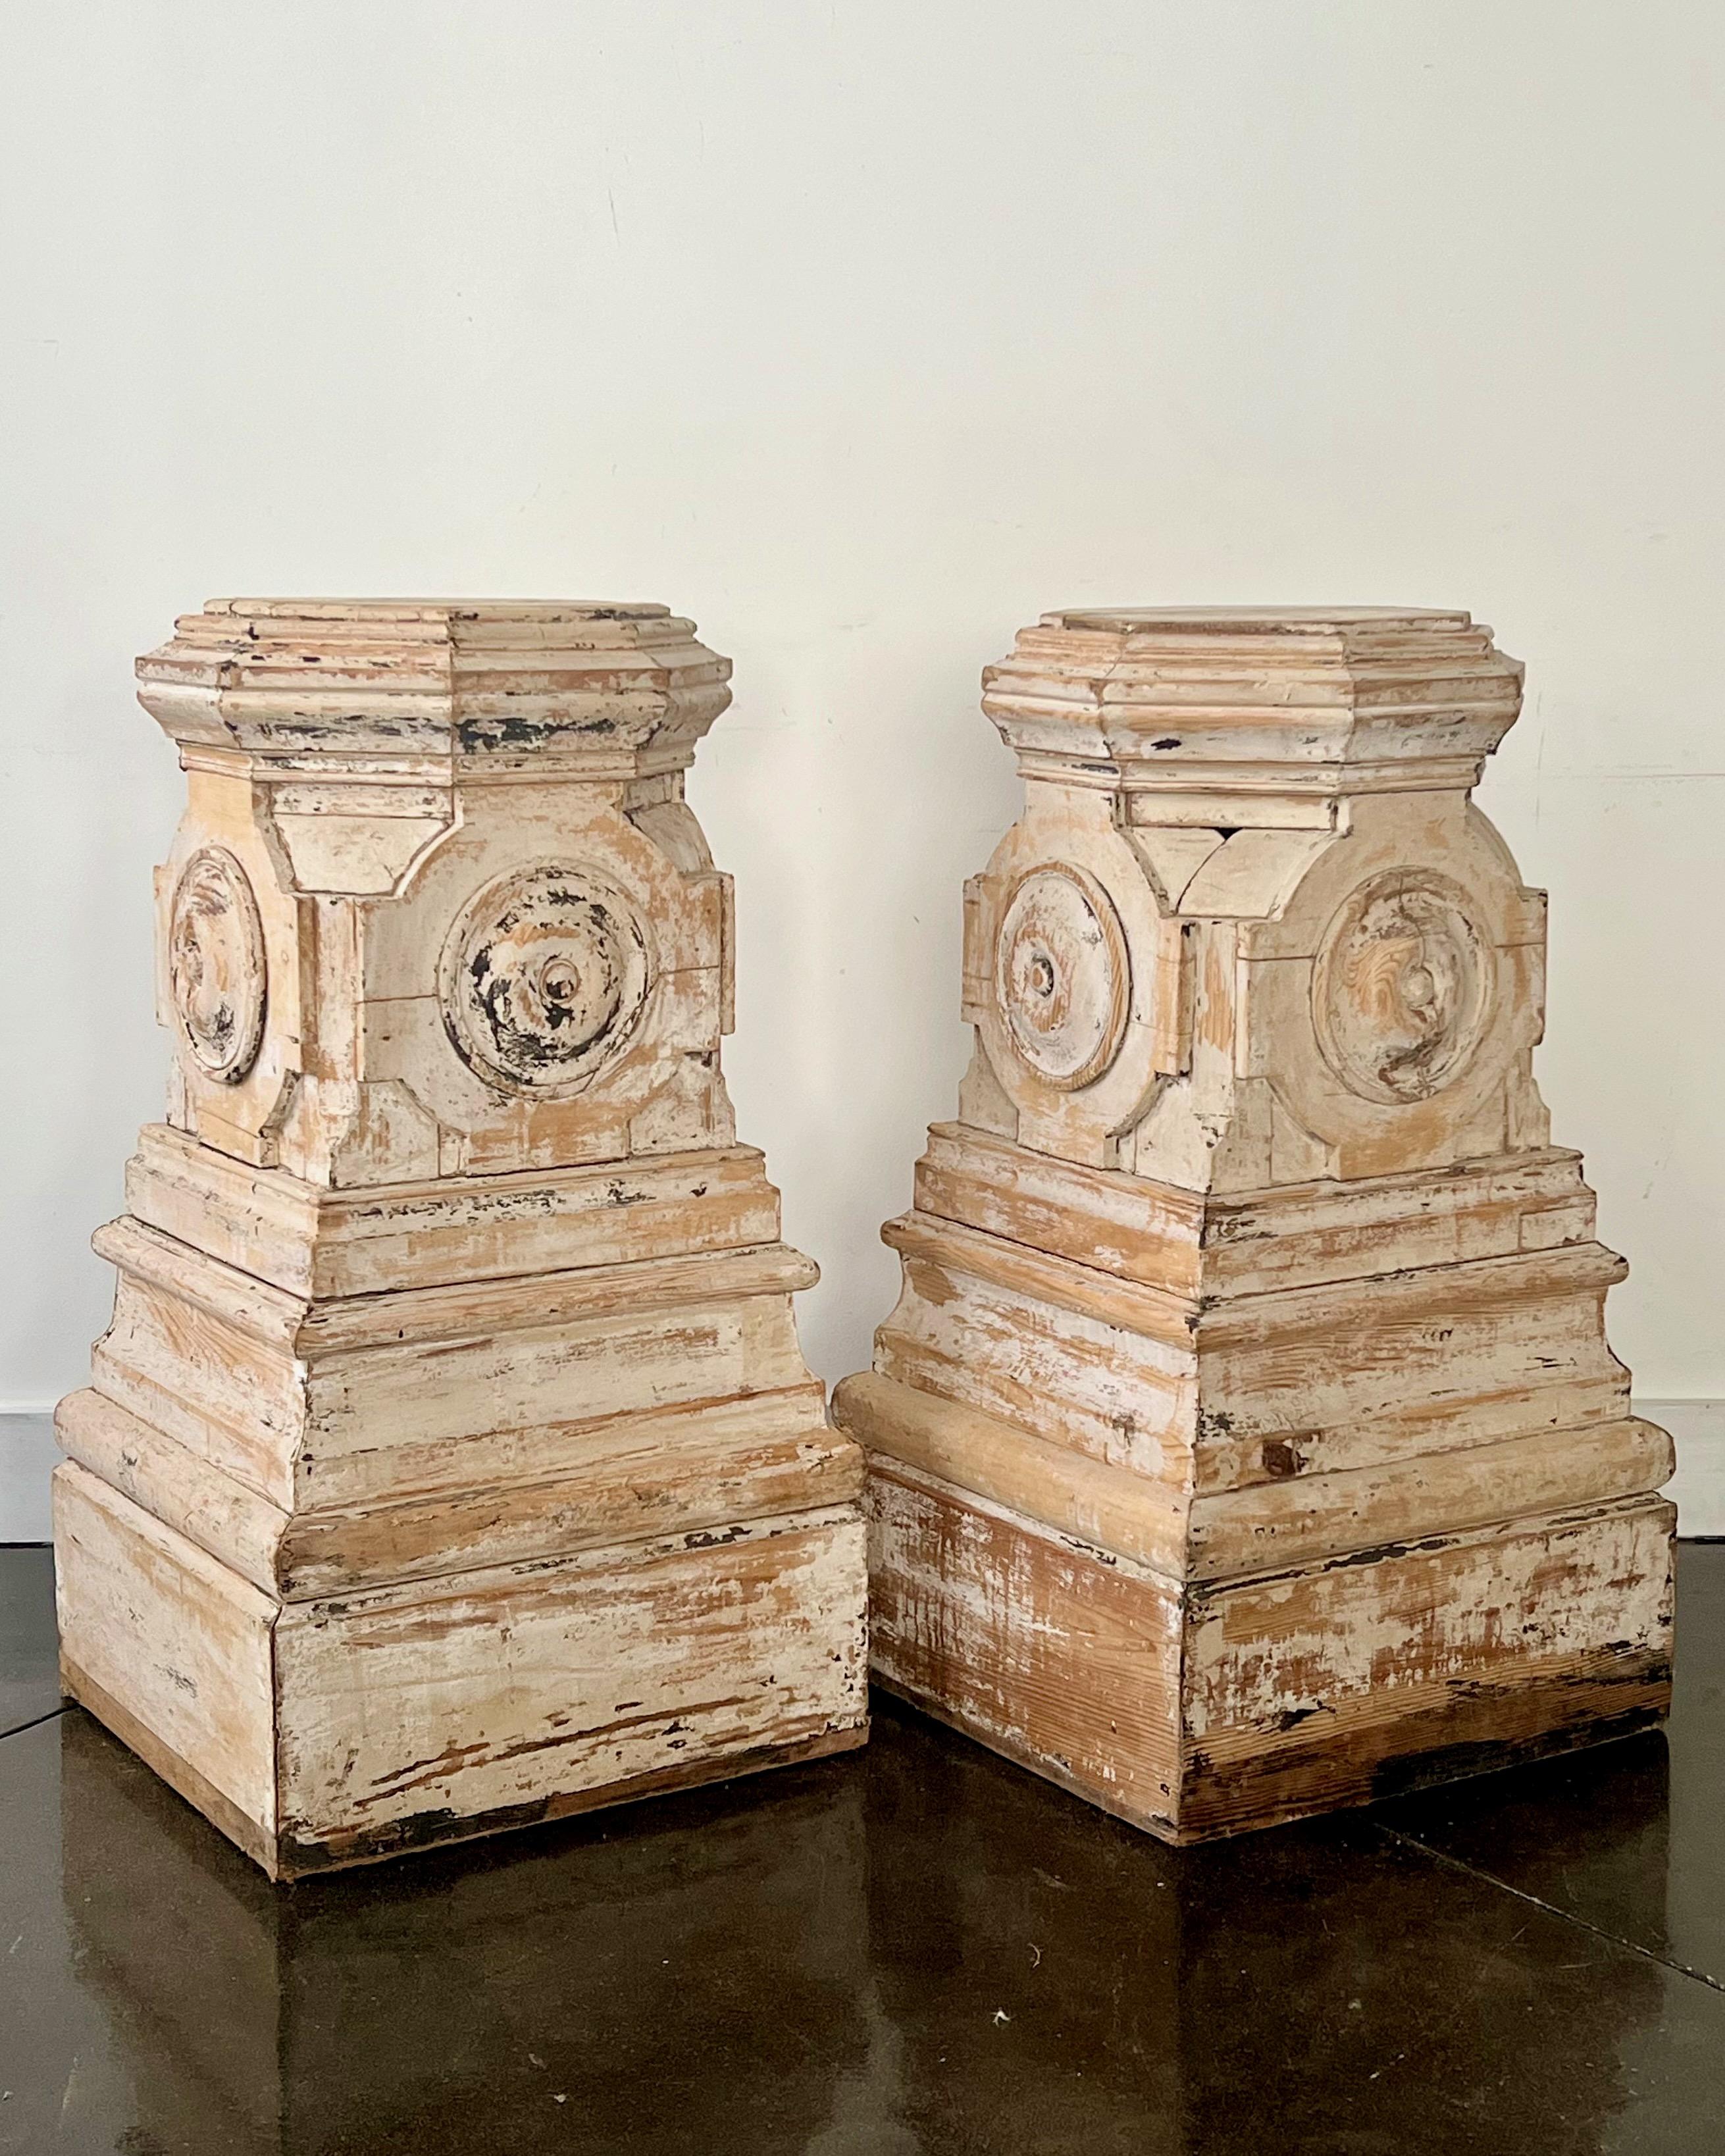 Paire de guéridons en bois sculpté français du 19ème siècle avec
les colonnes à quatre faces et les plateaux de forme octogonale sont fabriqués à la main dans un souci de symétrie et d'élégance raffinée, avec une base moulée à plusieurs niveaux.
La